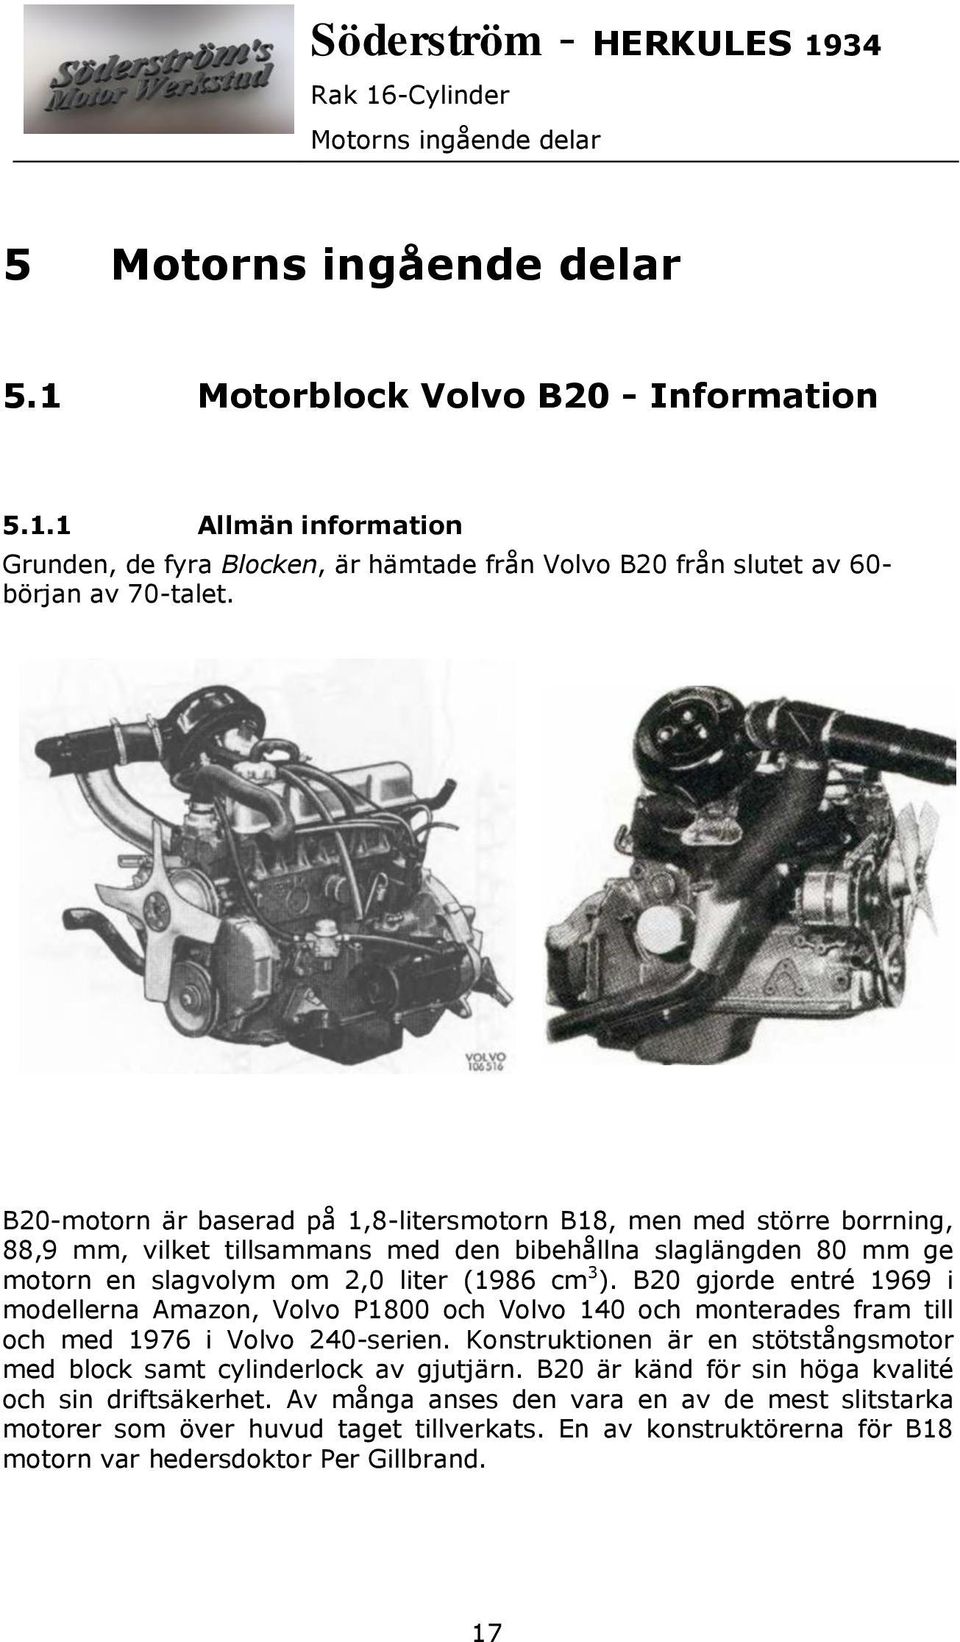 B20 gjorde entré 1969 i modellerna Amazon, Volvo P1800 och Volvo 140 och monterades fram till och med 1976 i Volvo 240-serien.